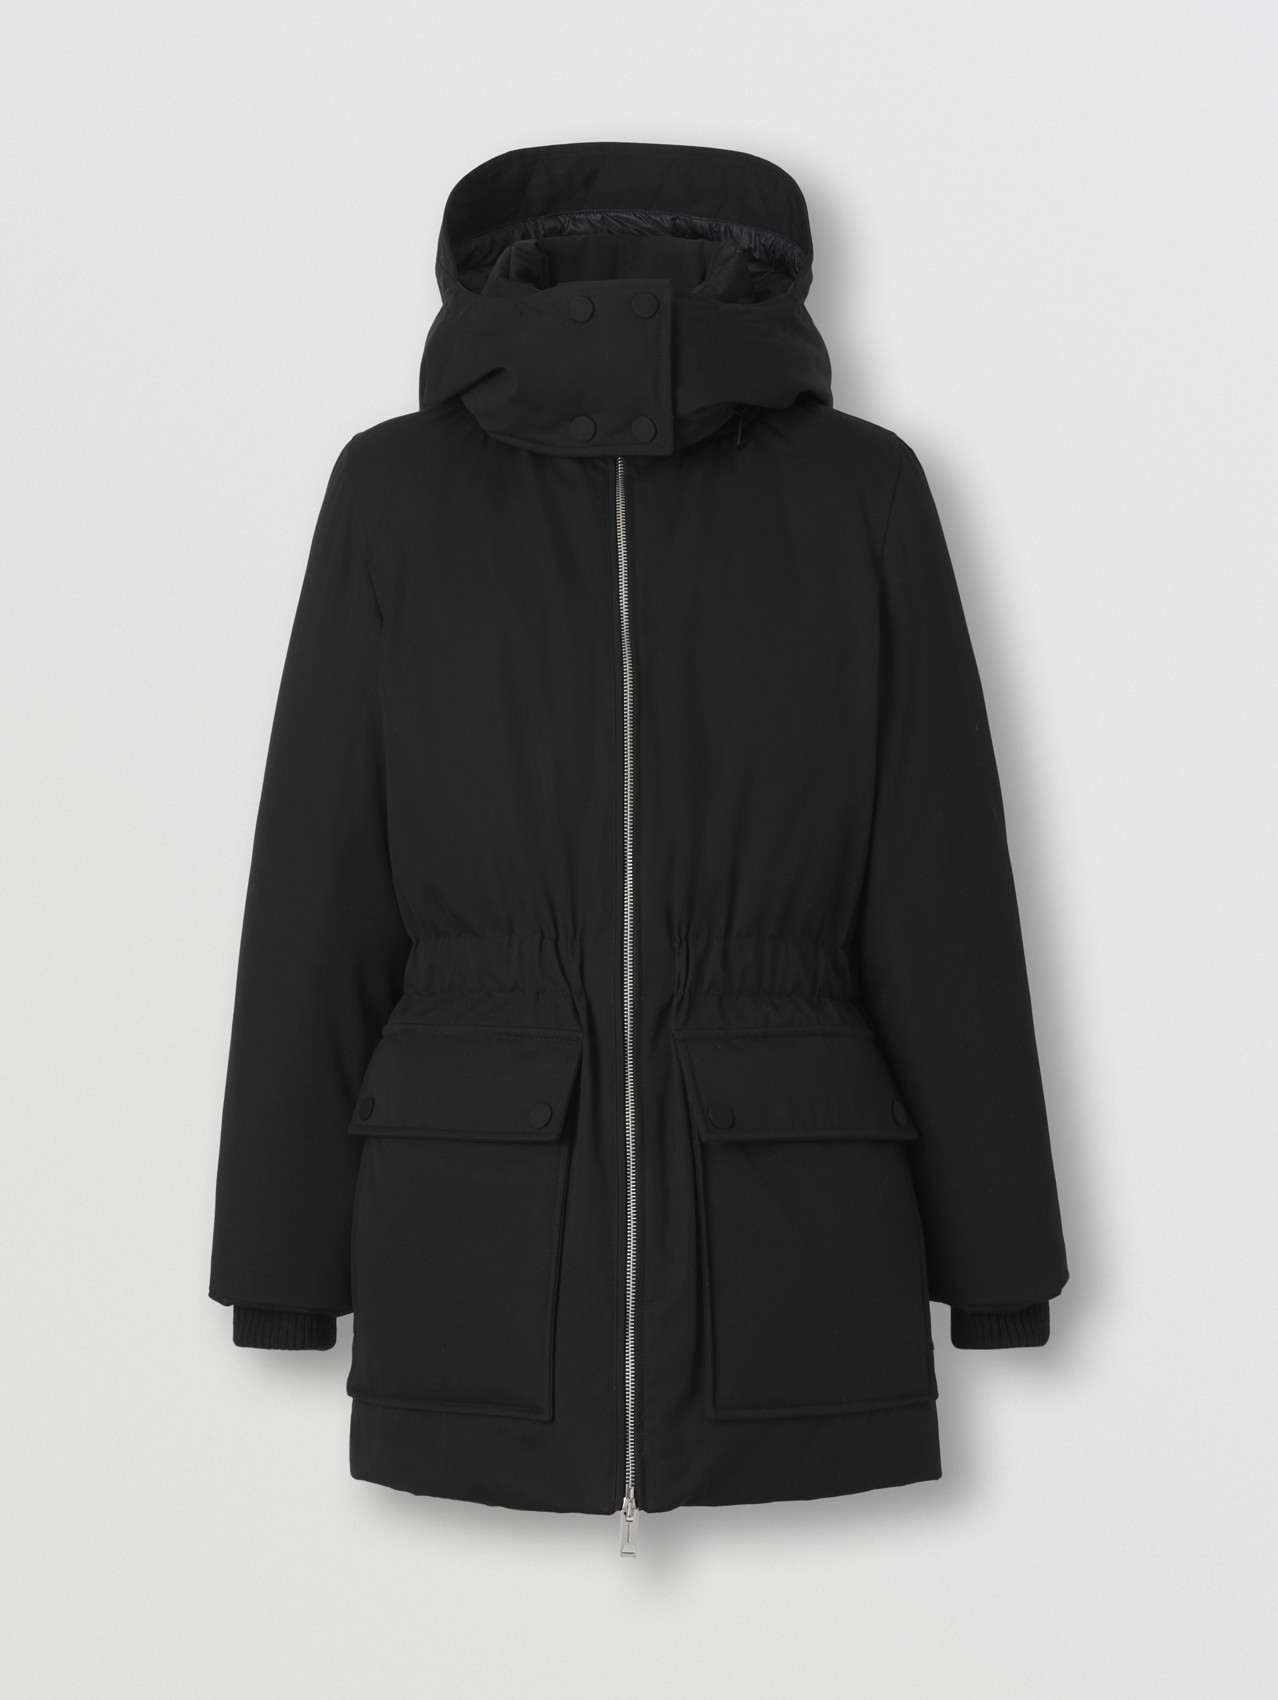 Abrigo en algodón de gabardina con capucha extraíble (Negro)